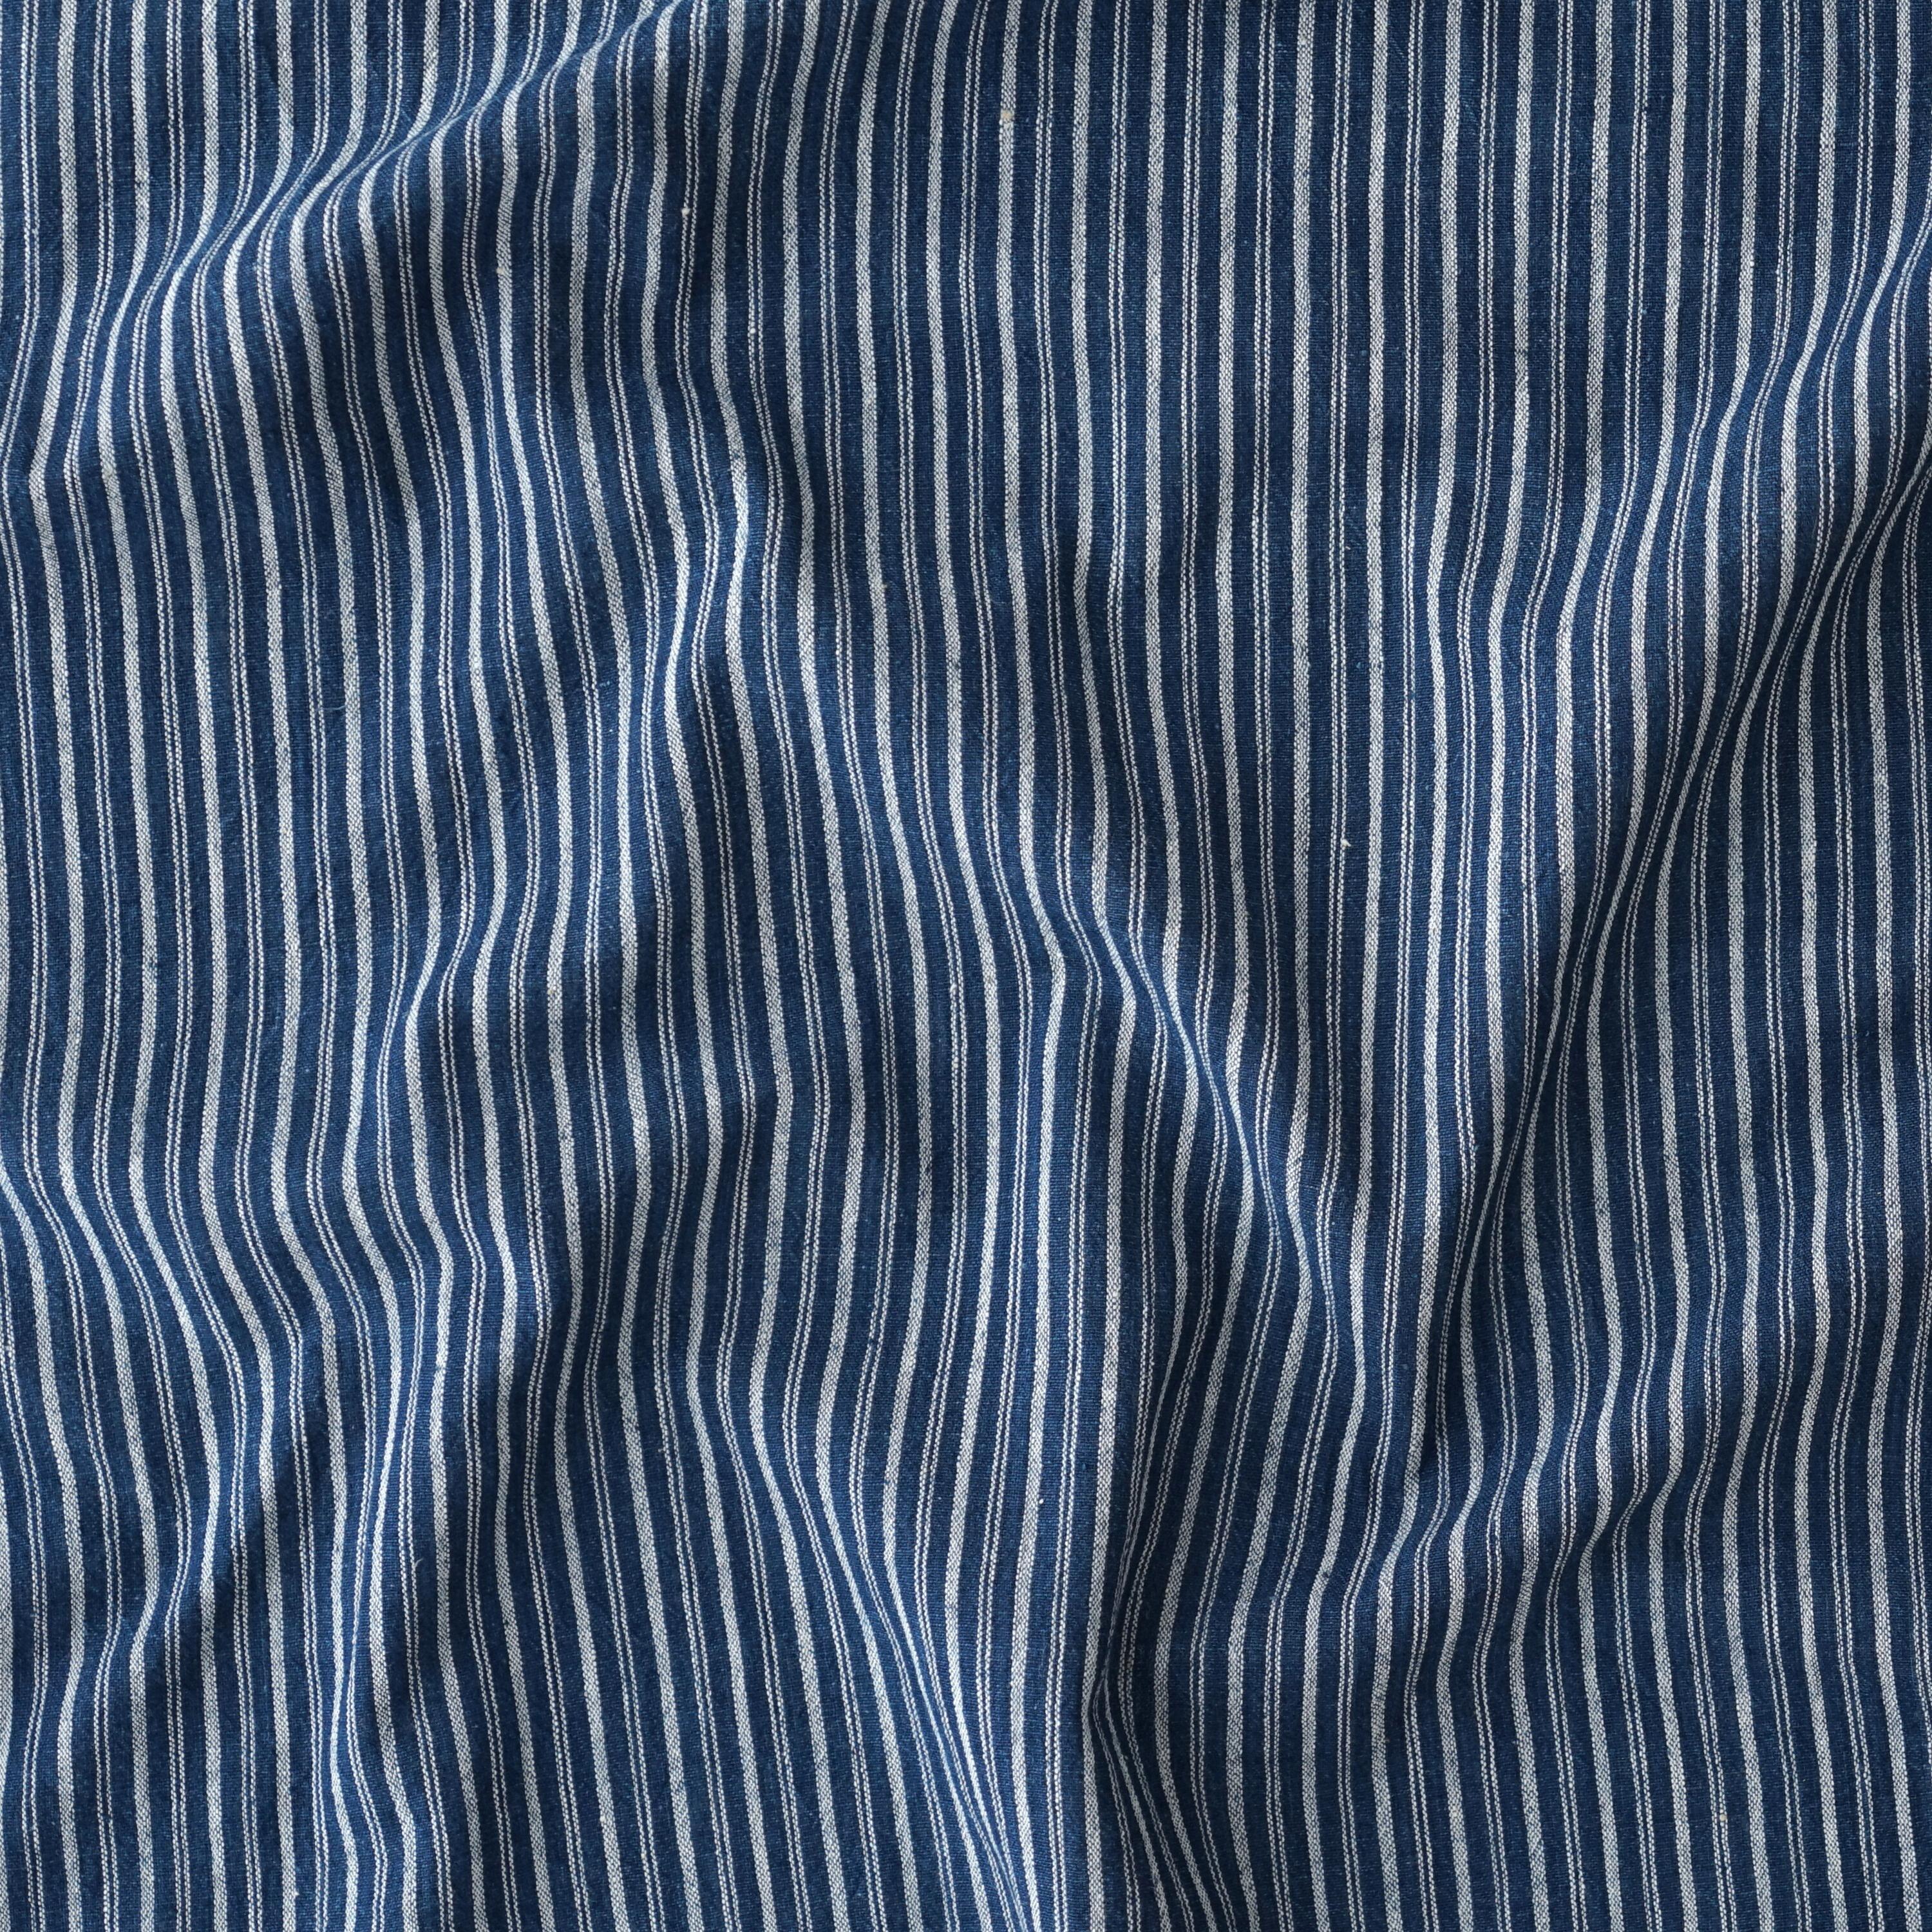 100% Handloom Woven Cotton - Double Stripes - Natural Indigo Warp & Weft, White Warp - Contrast